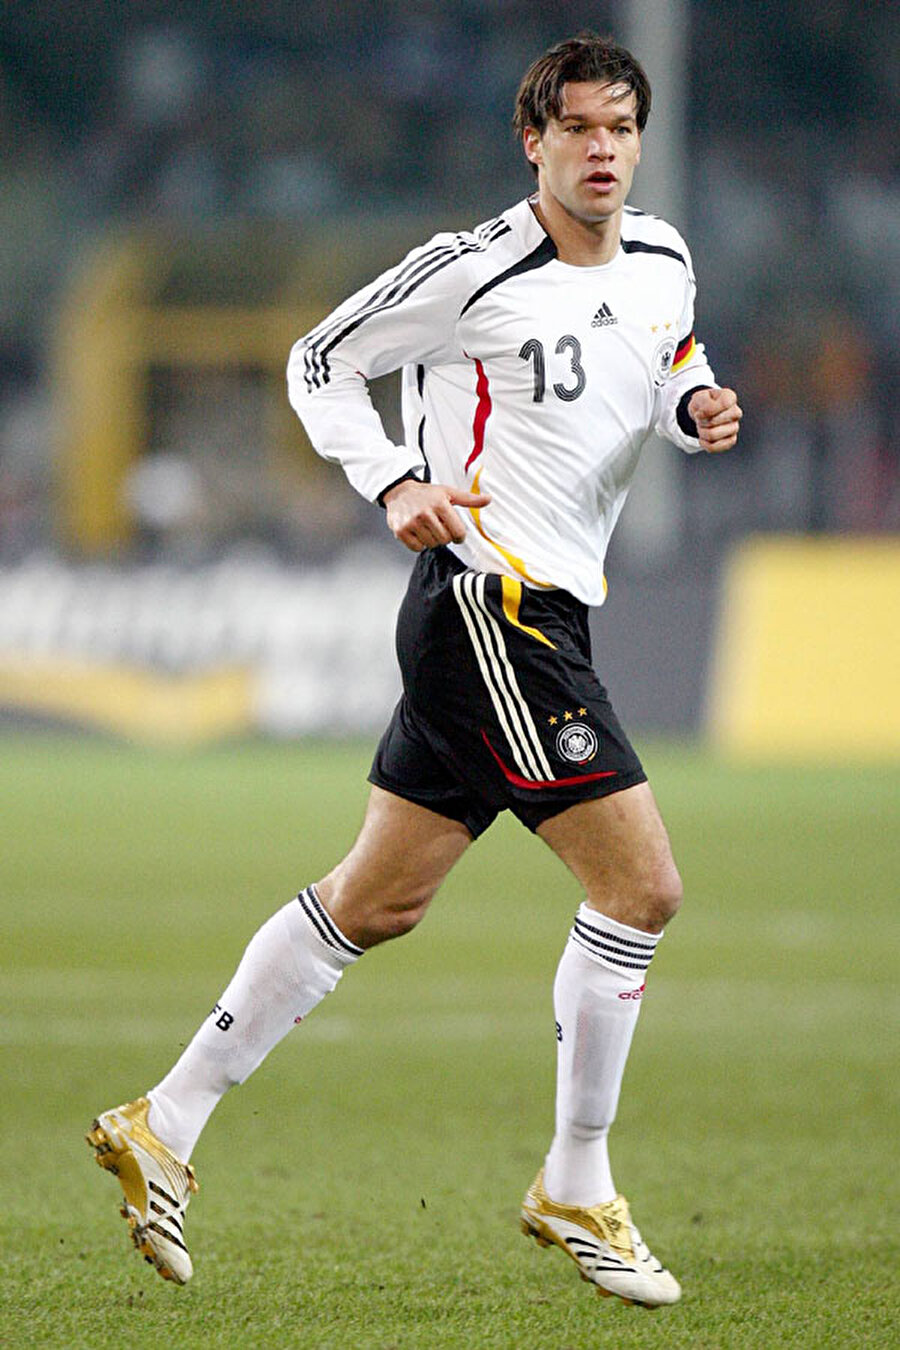 Michael Ballack 
Alman futbolunun unutulmaz isimlerinden Michael Ballack, 2002 Dünya Kupası finalinde forma giymedi. Brezilya'nın Almanya'yı 2-0 mağlup ettiği maçta Ballack cezası nedeniyle tribünde yer aldı. 